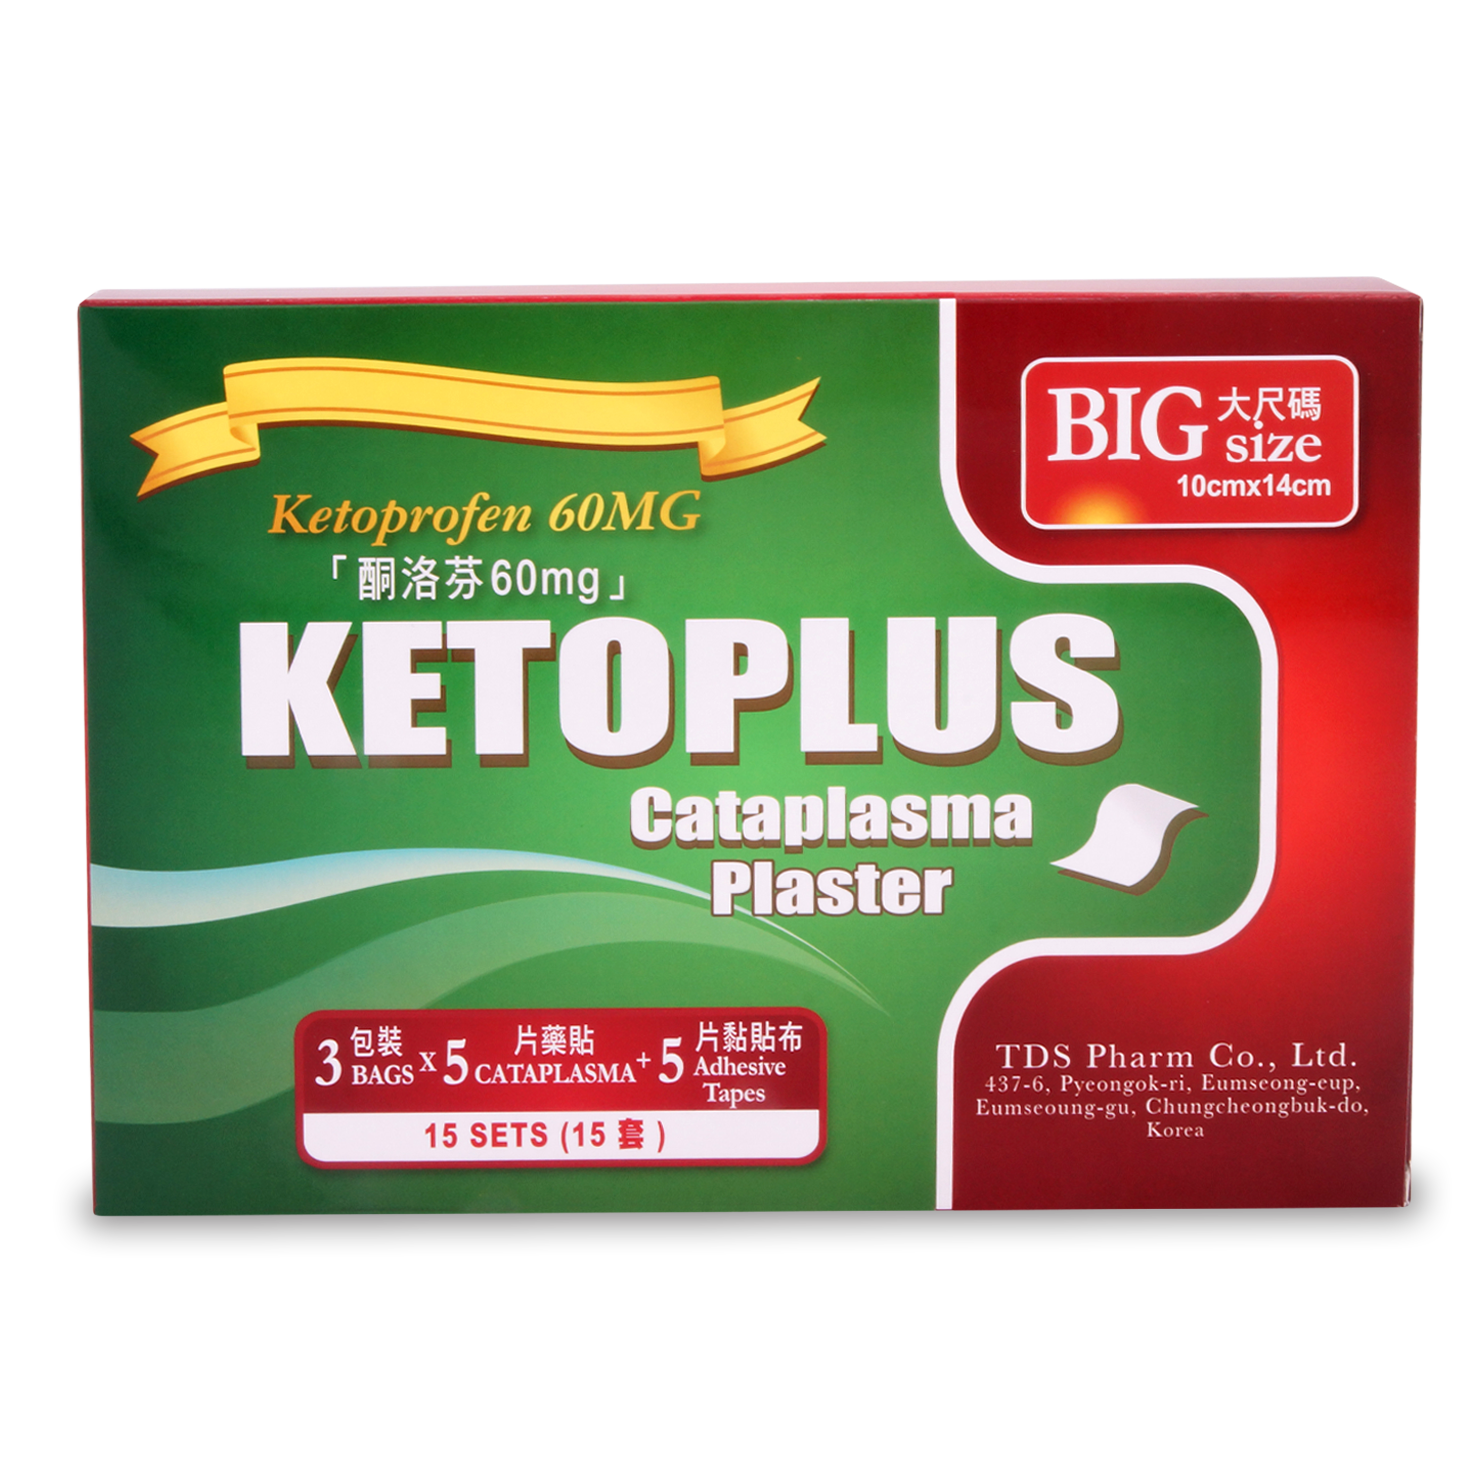 Ketoplus Cataplasma Plaster 3 bags x 5 cataplasma + 5 adhesive tapes (P1S3)